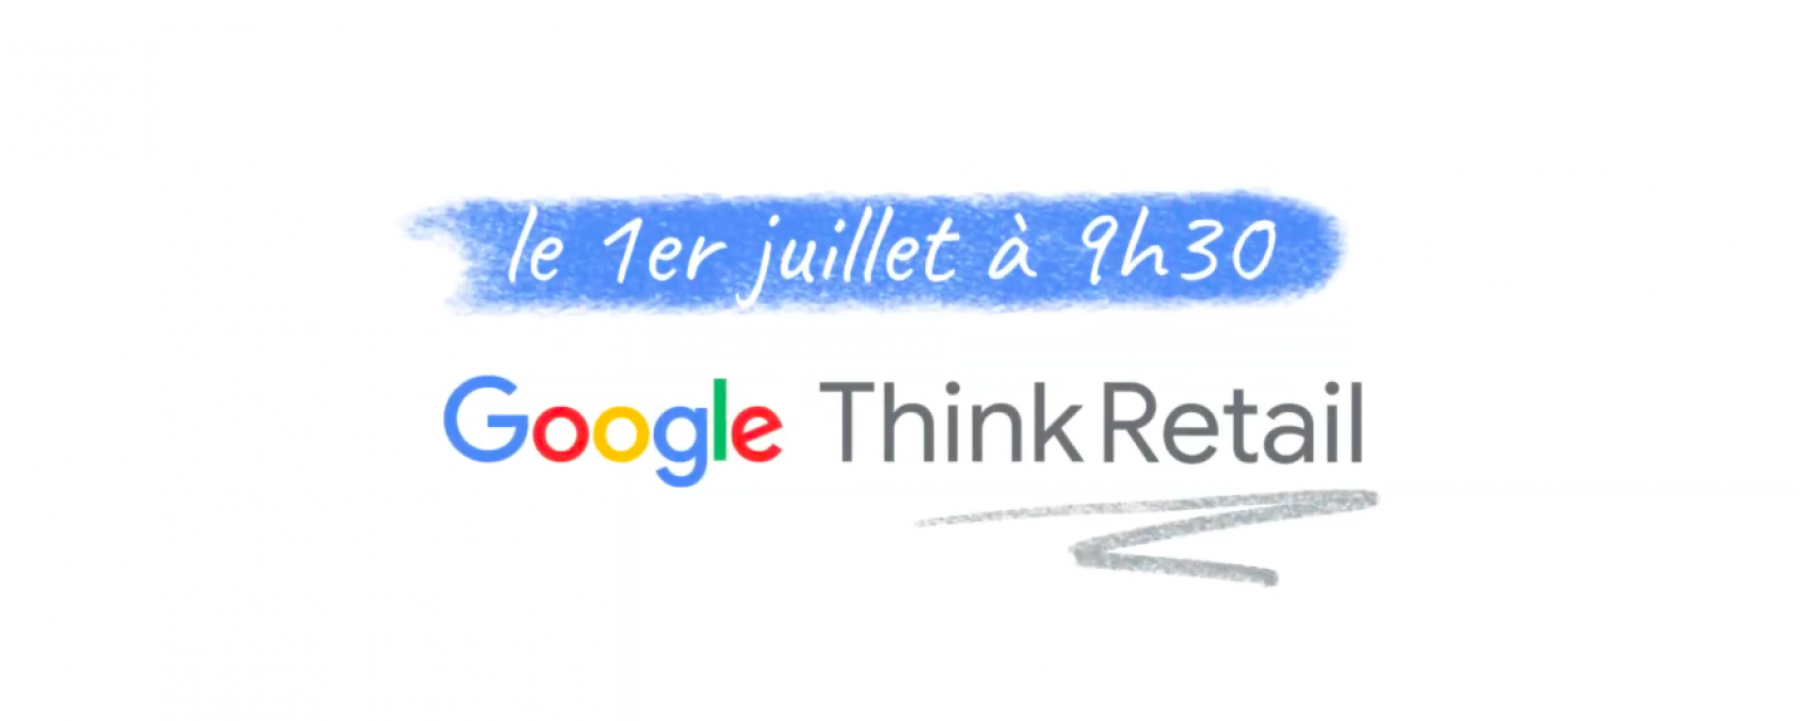 Google Think Retail , par Google le 1er juillet 2021